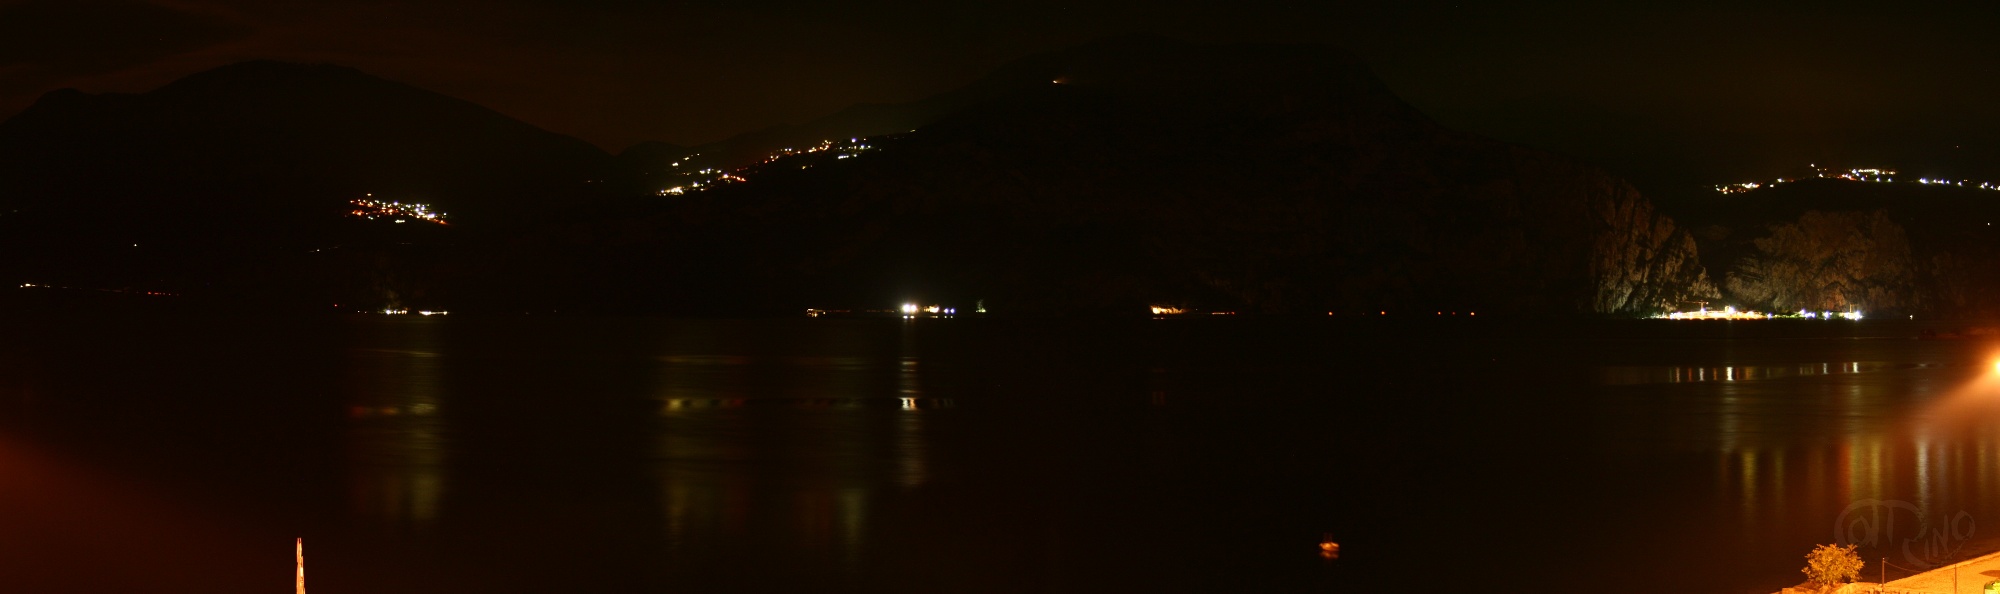 Brenzone - Lago di Garda nocturno